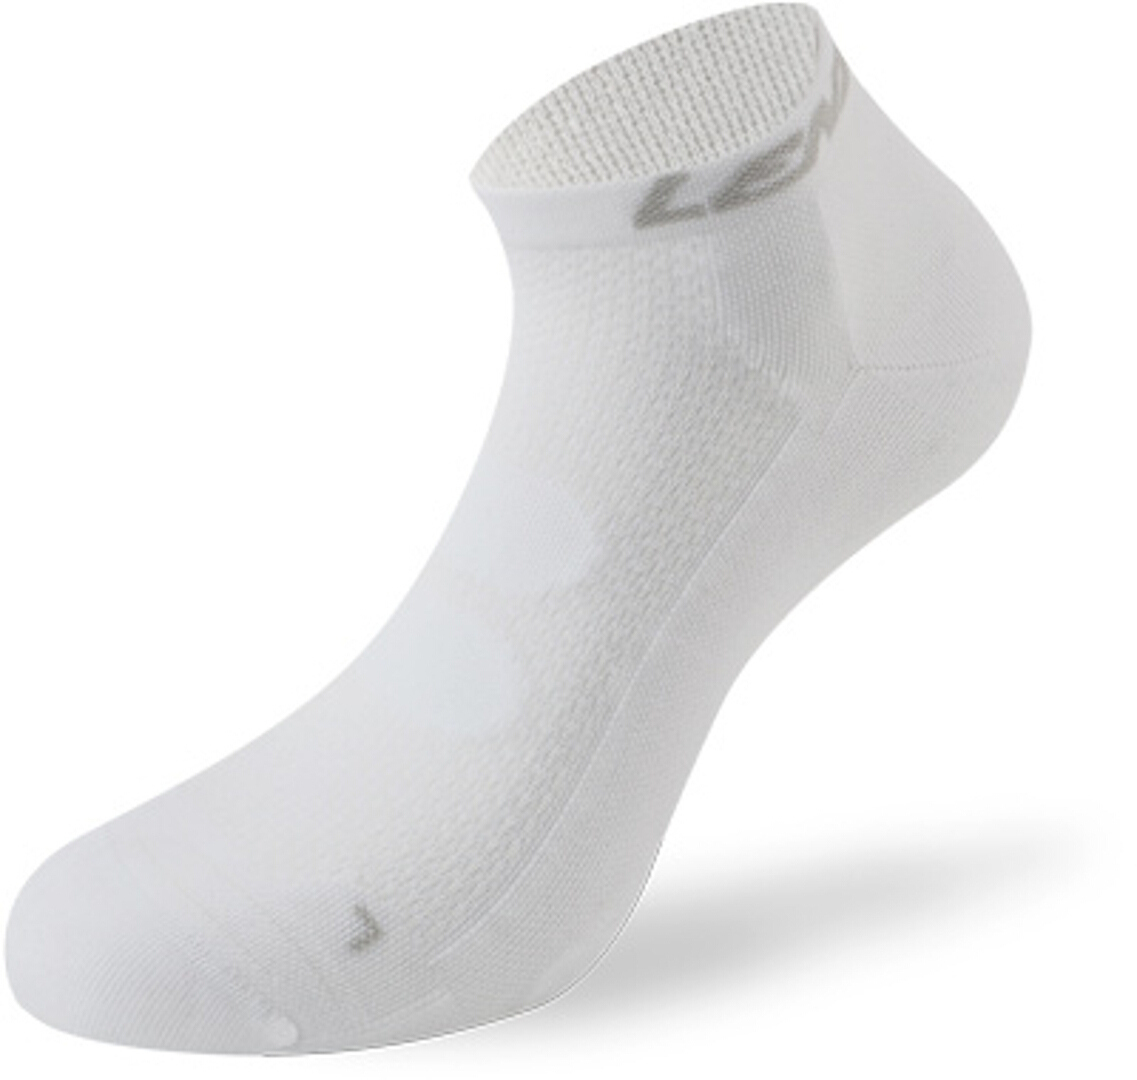 Носки Lenz 5.0 Short Компрессионные, белые фабричные компрессионные носки компрессионные носки оптовая продажа компрессионные носки компрессионные носки